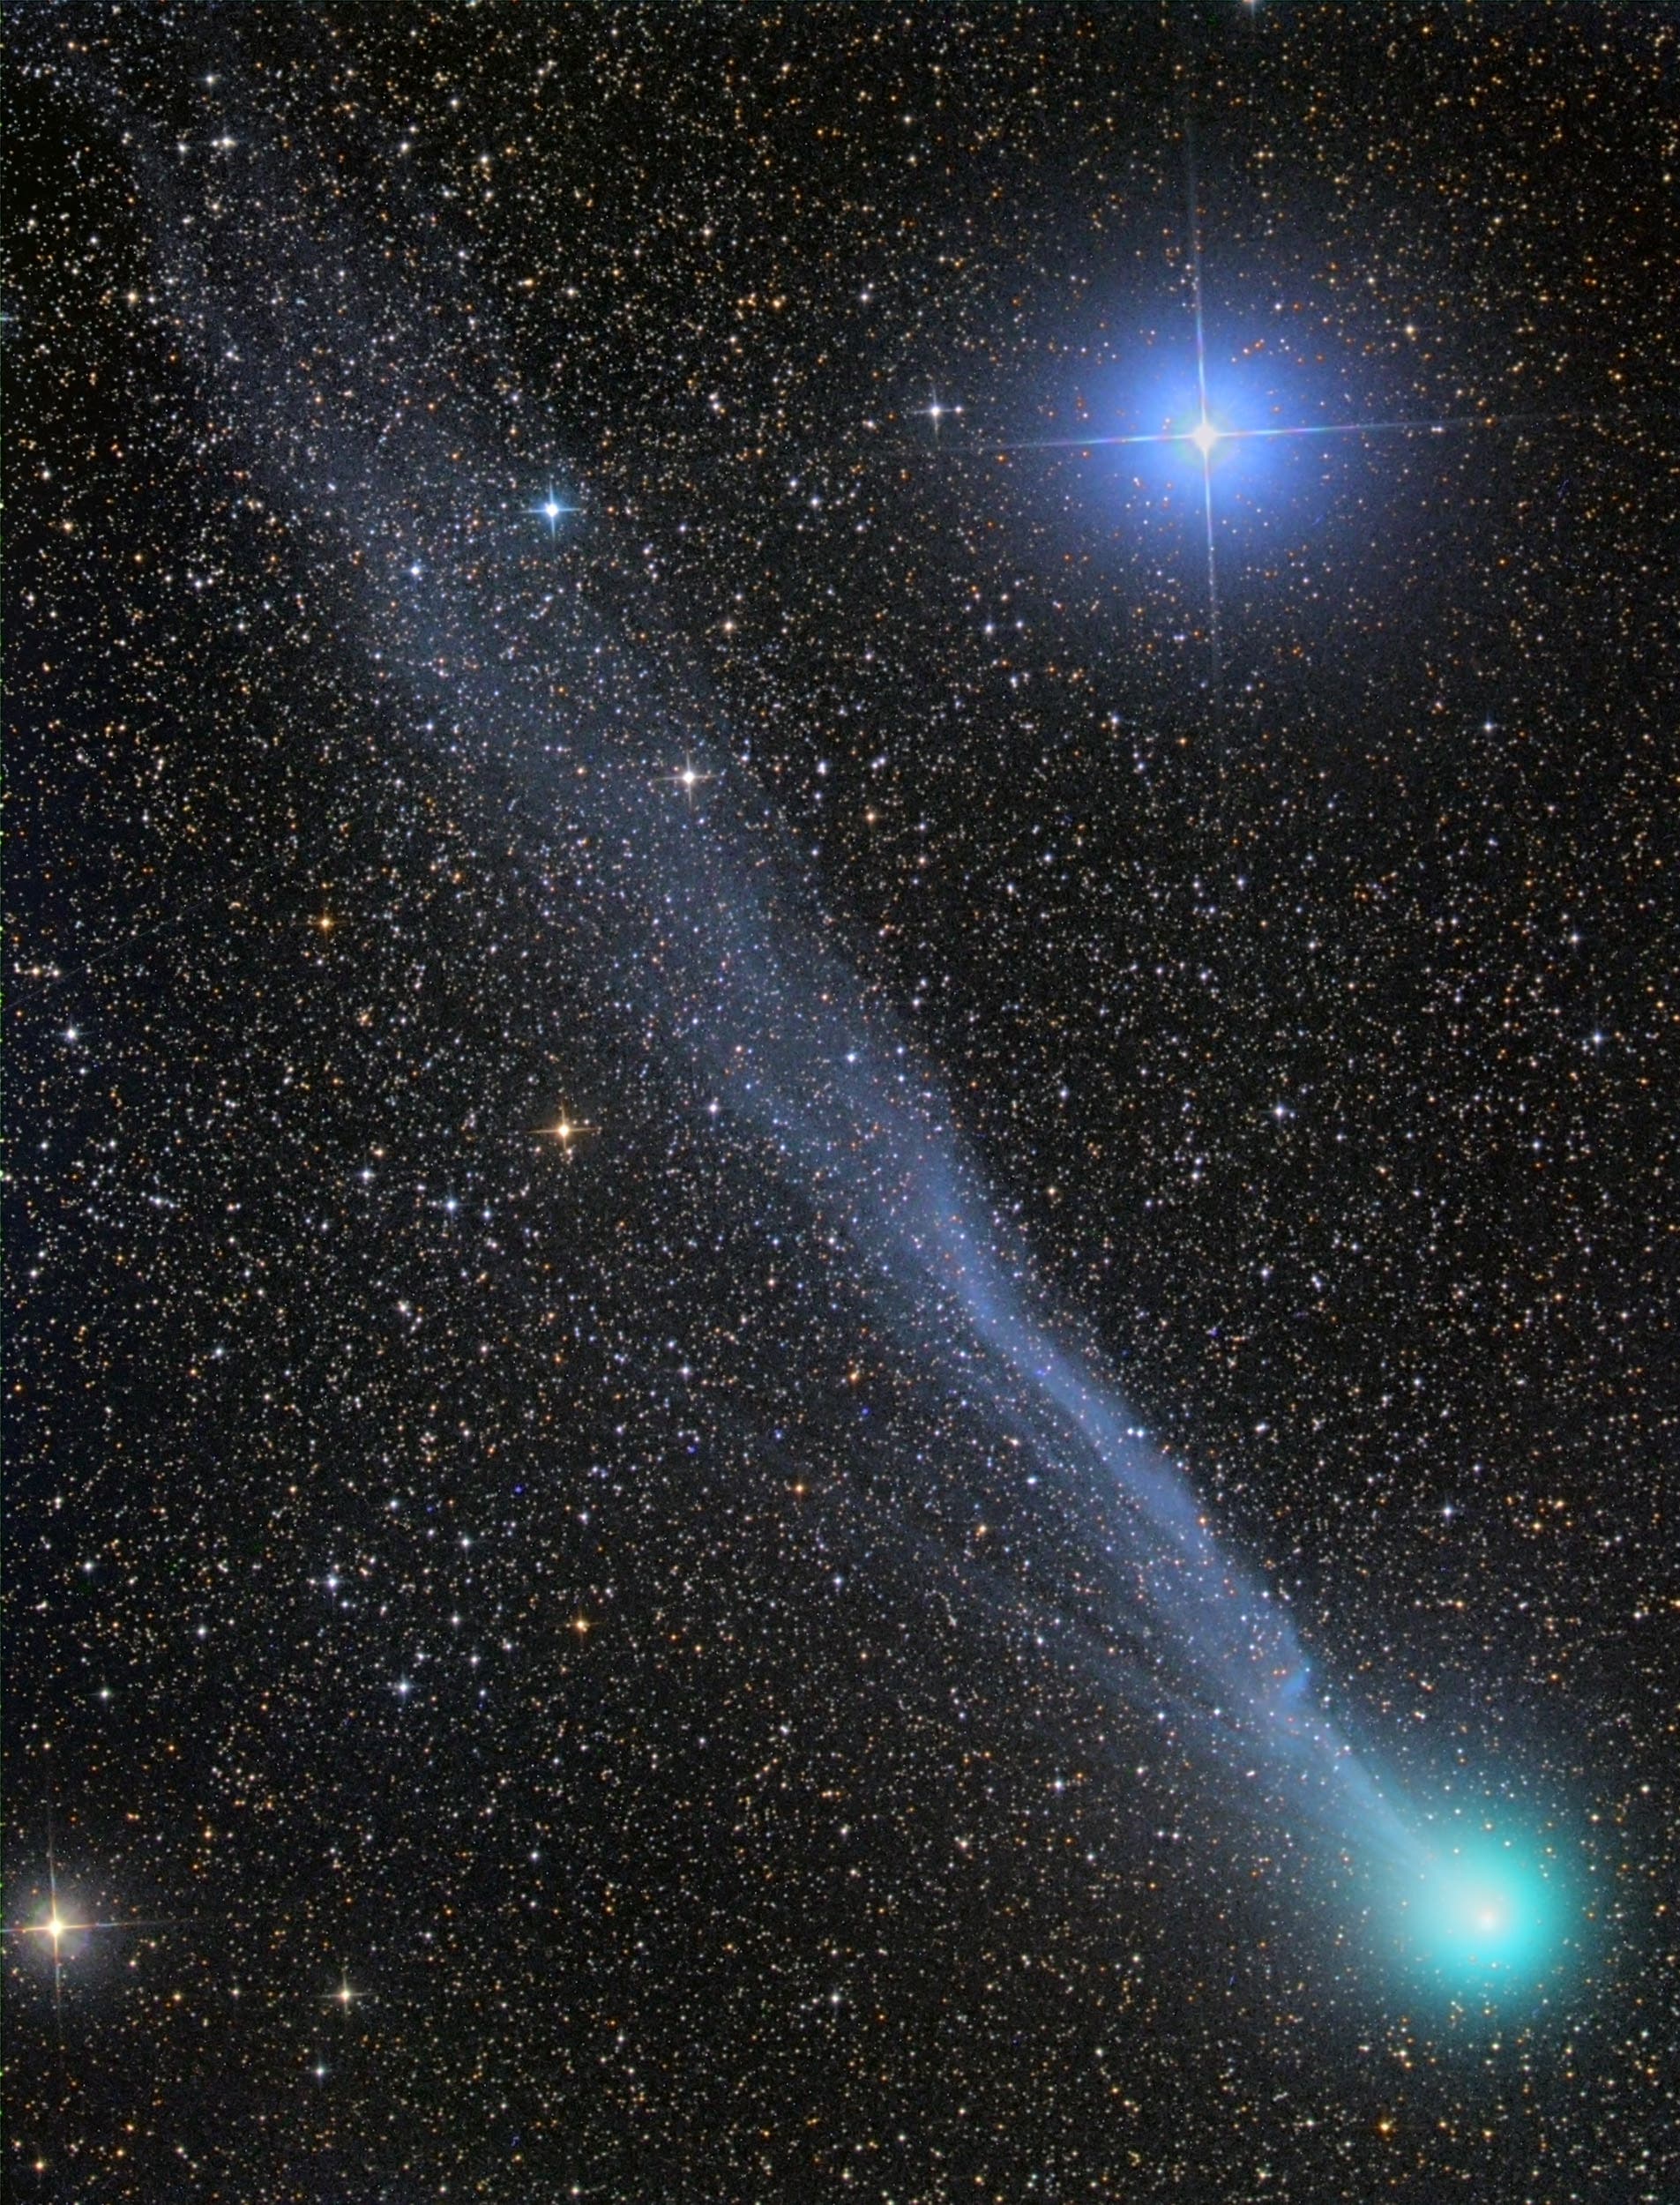 Komet C/2014 Q2 Lovejoy mit Schweifabriss